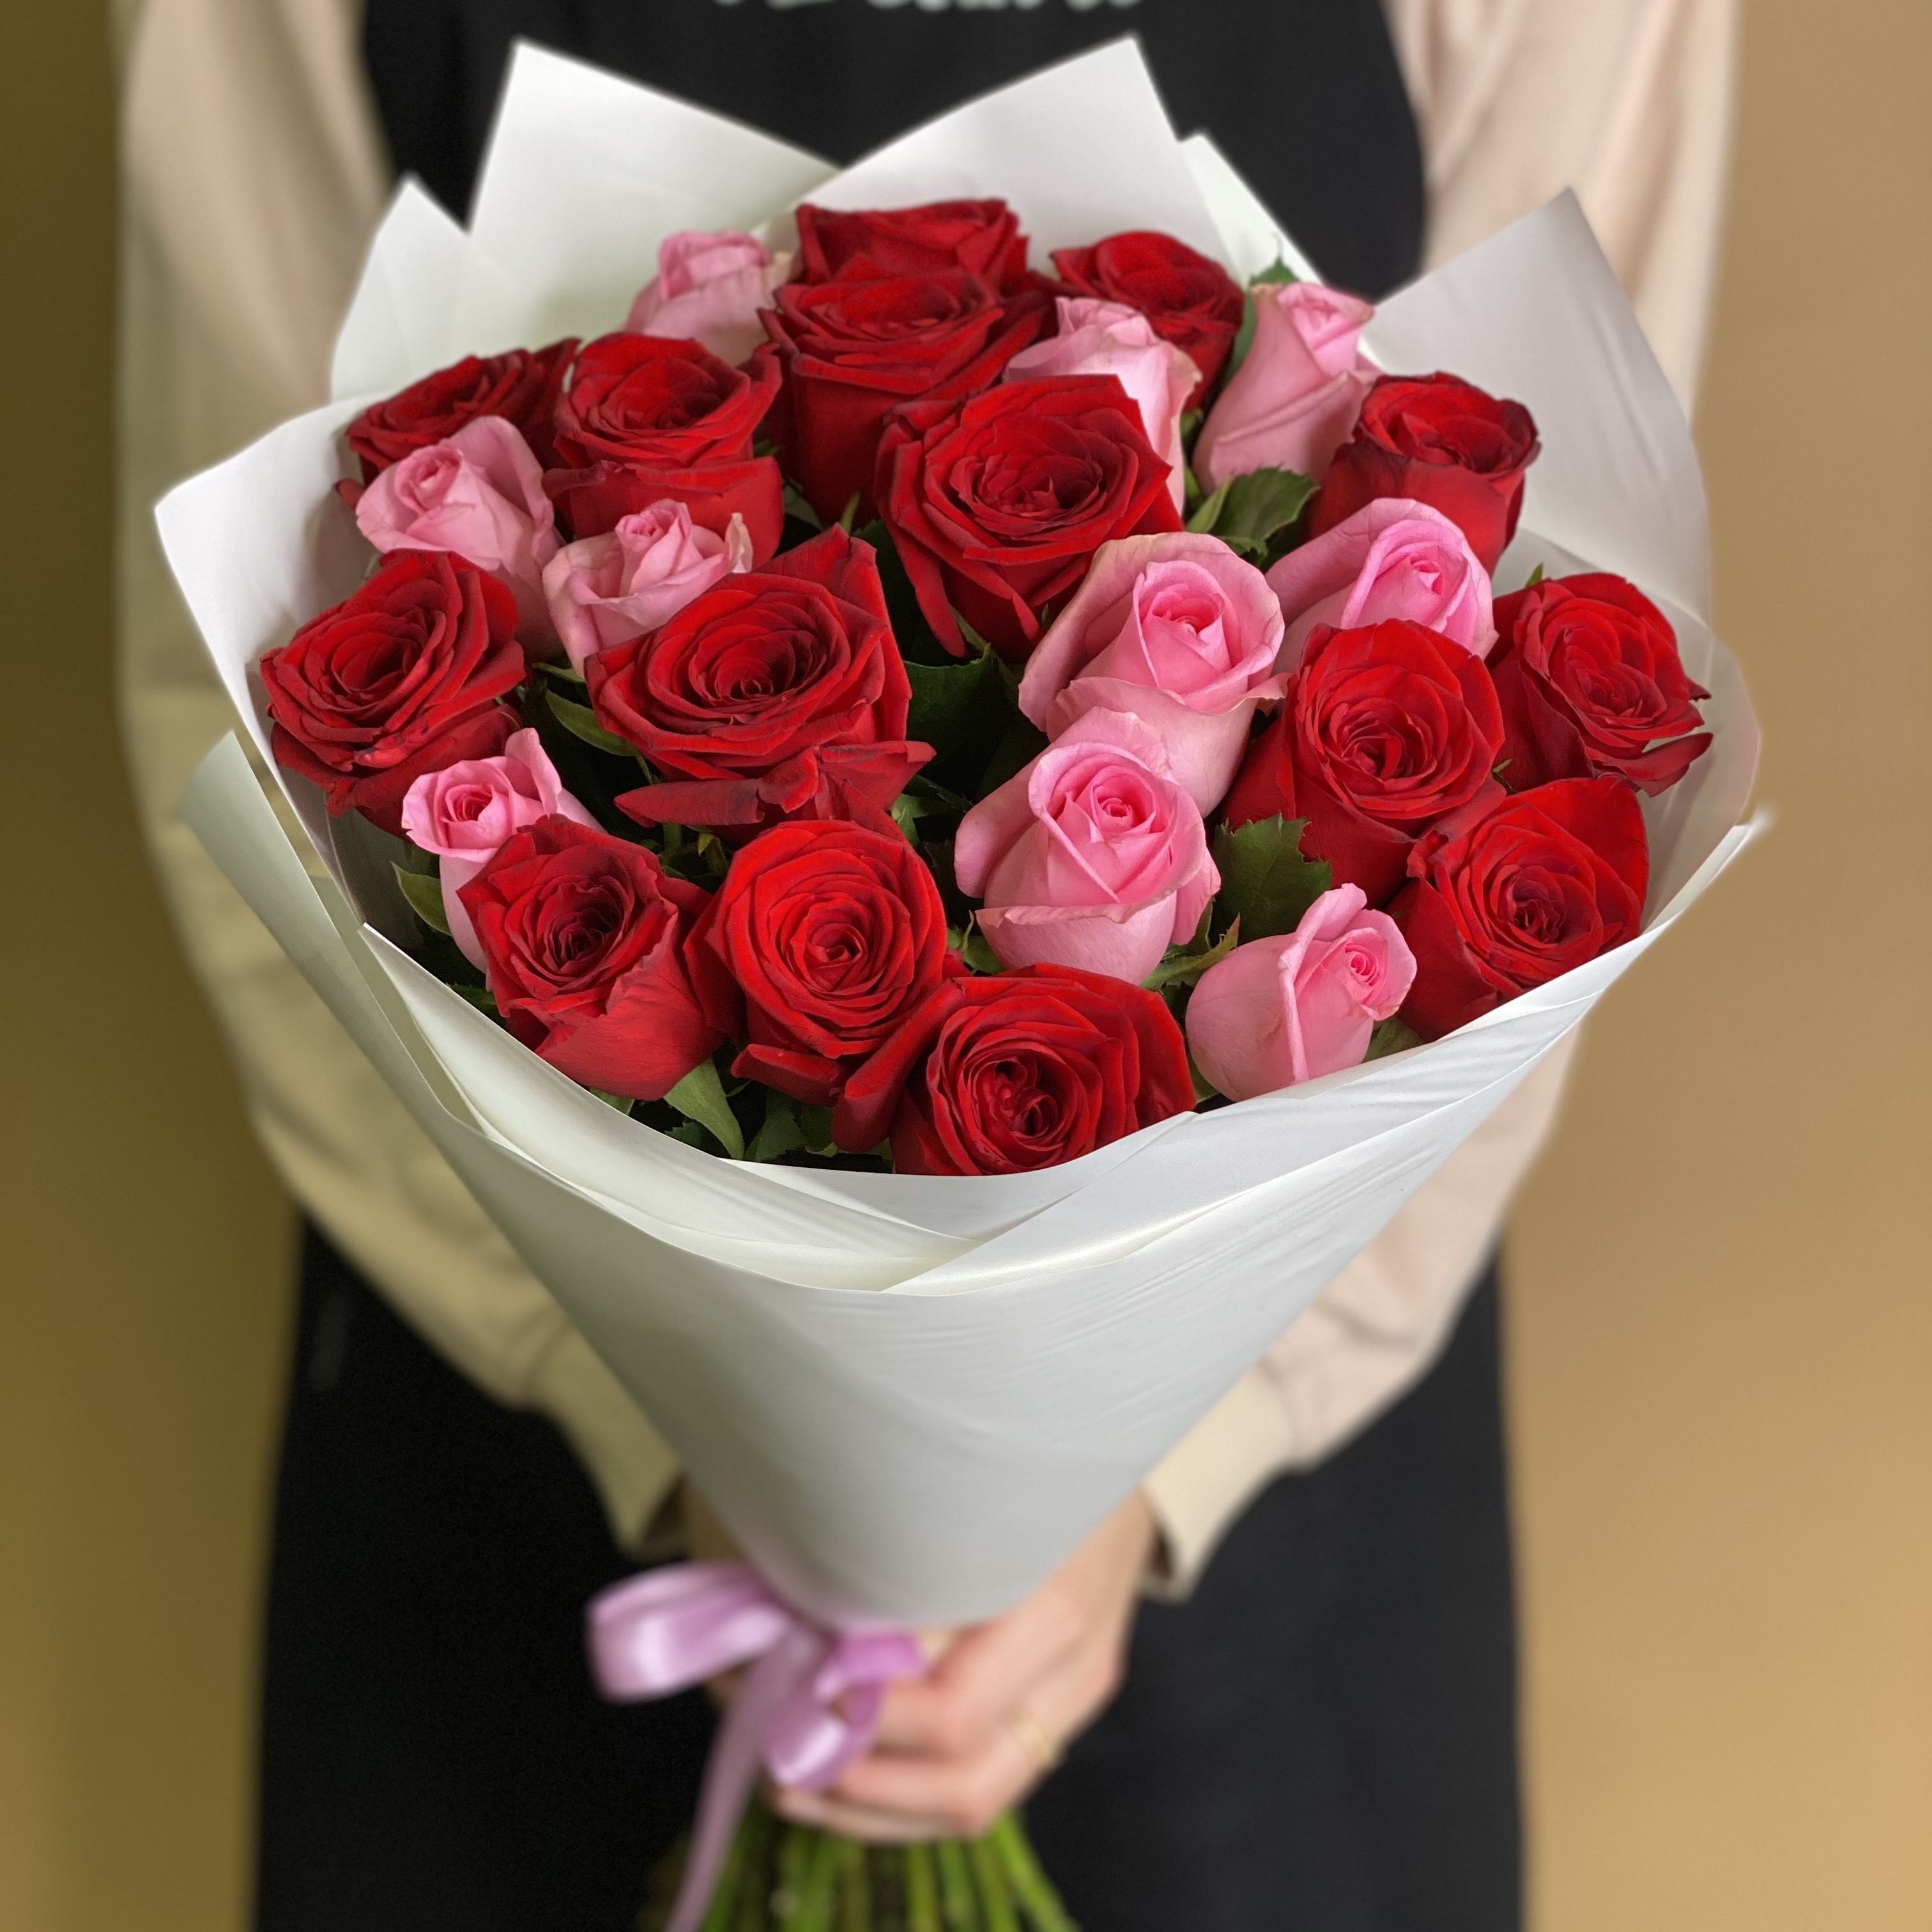 букет из 25 красных роз 70 см Букет из красных и розовых роз 25 шт. (70 см)